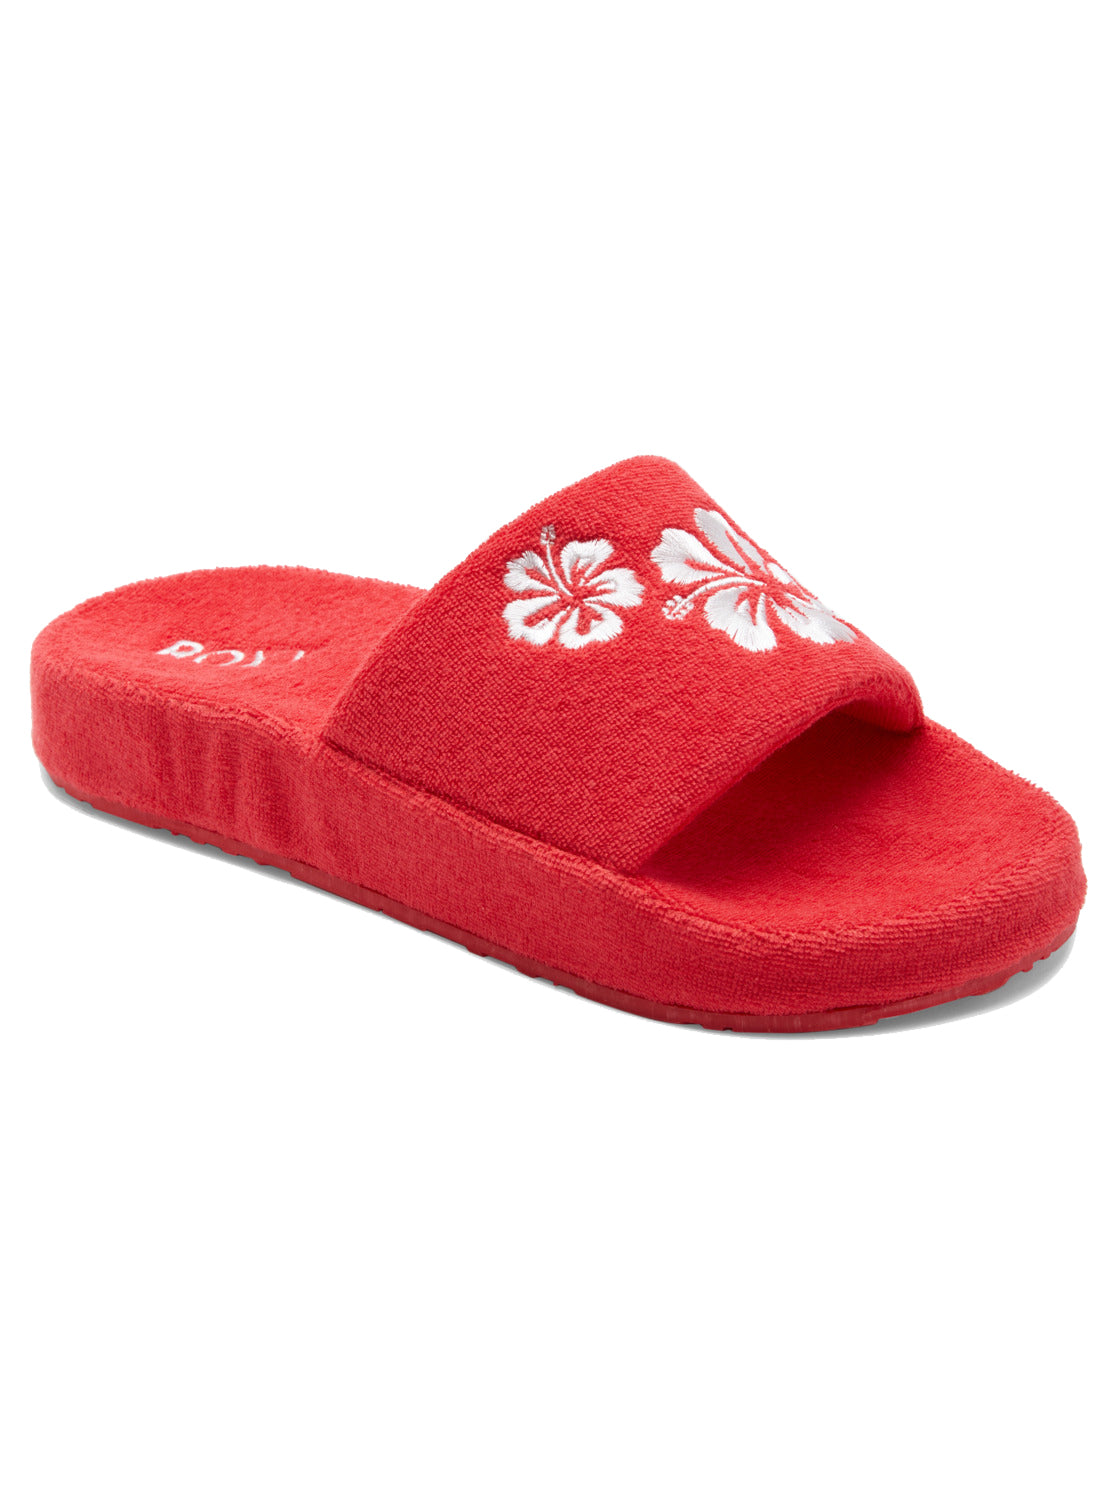 Roxy Slippy Sandals RED 10